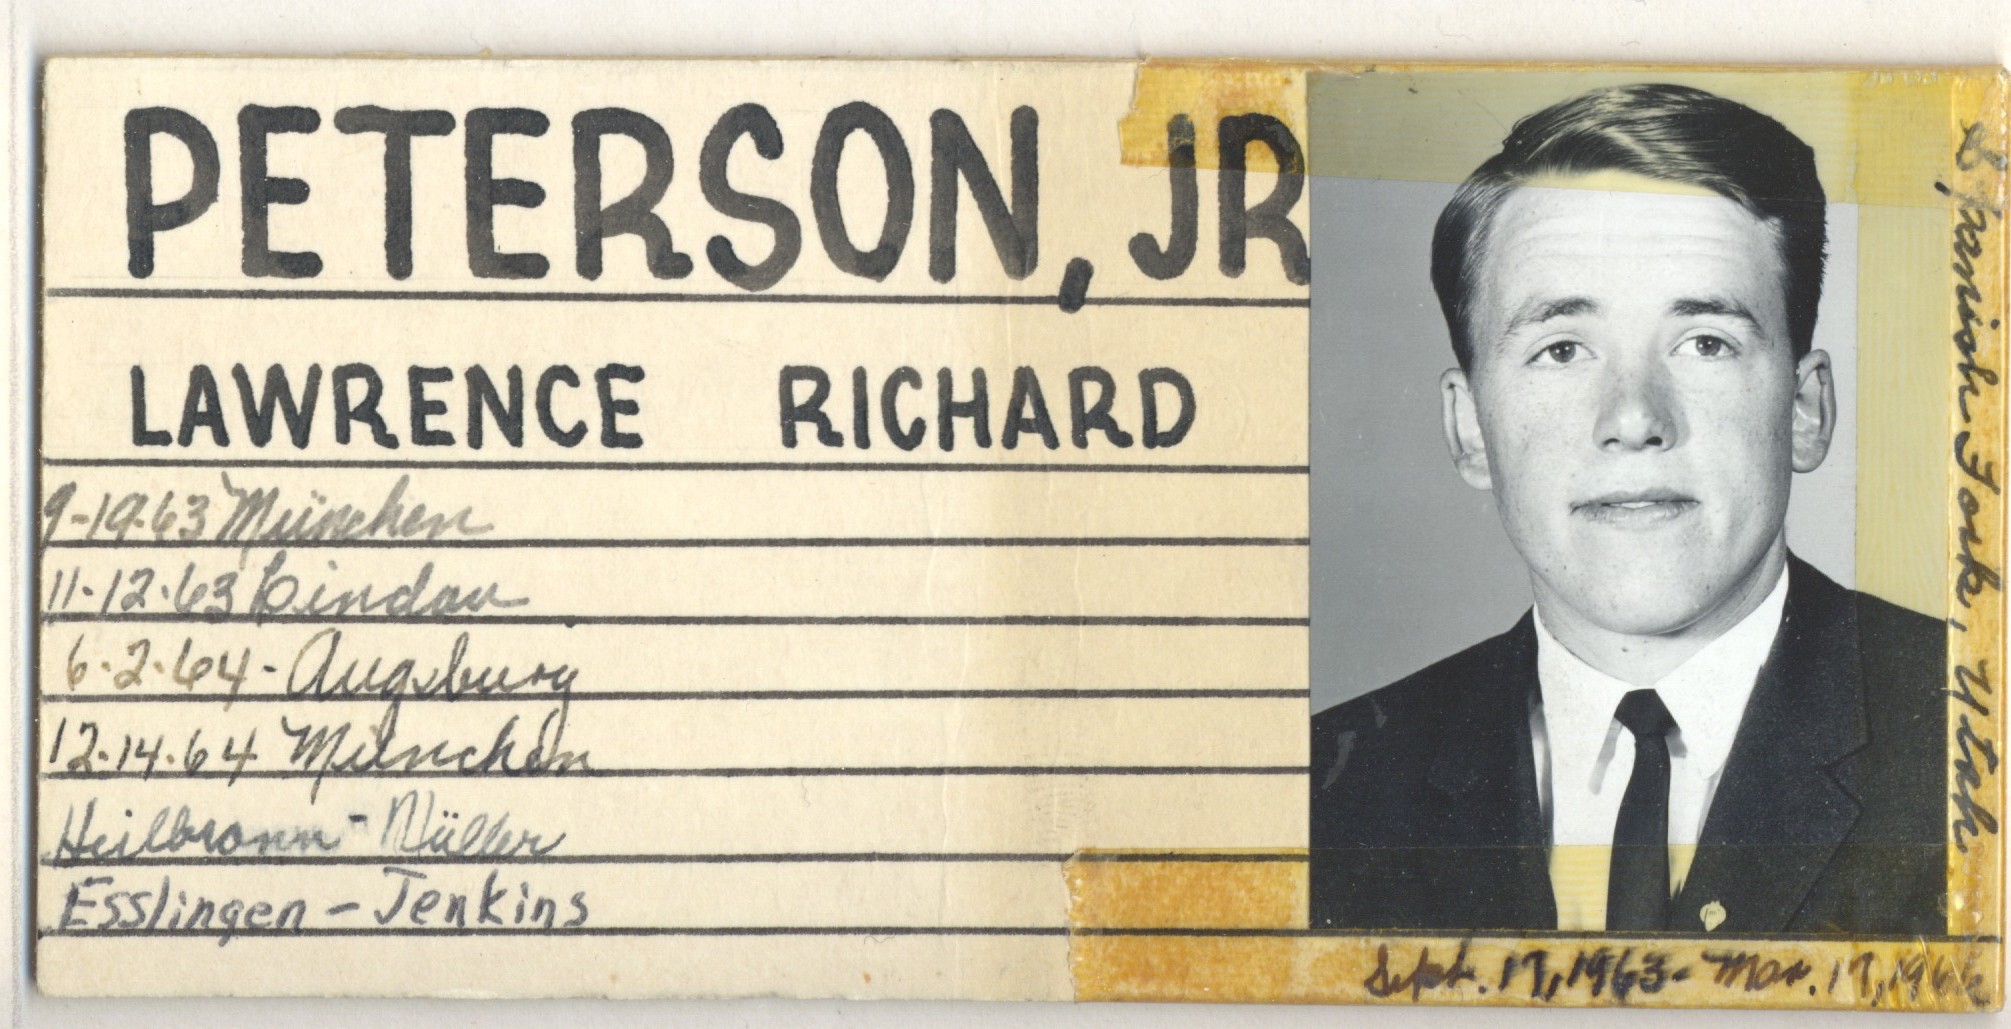 Peterson Jr, Lawrence Richard